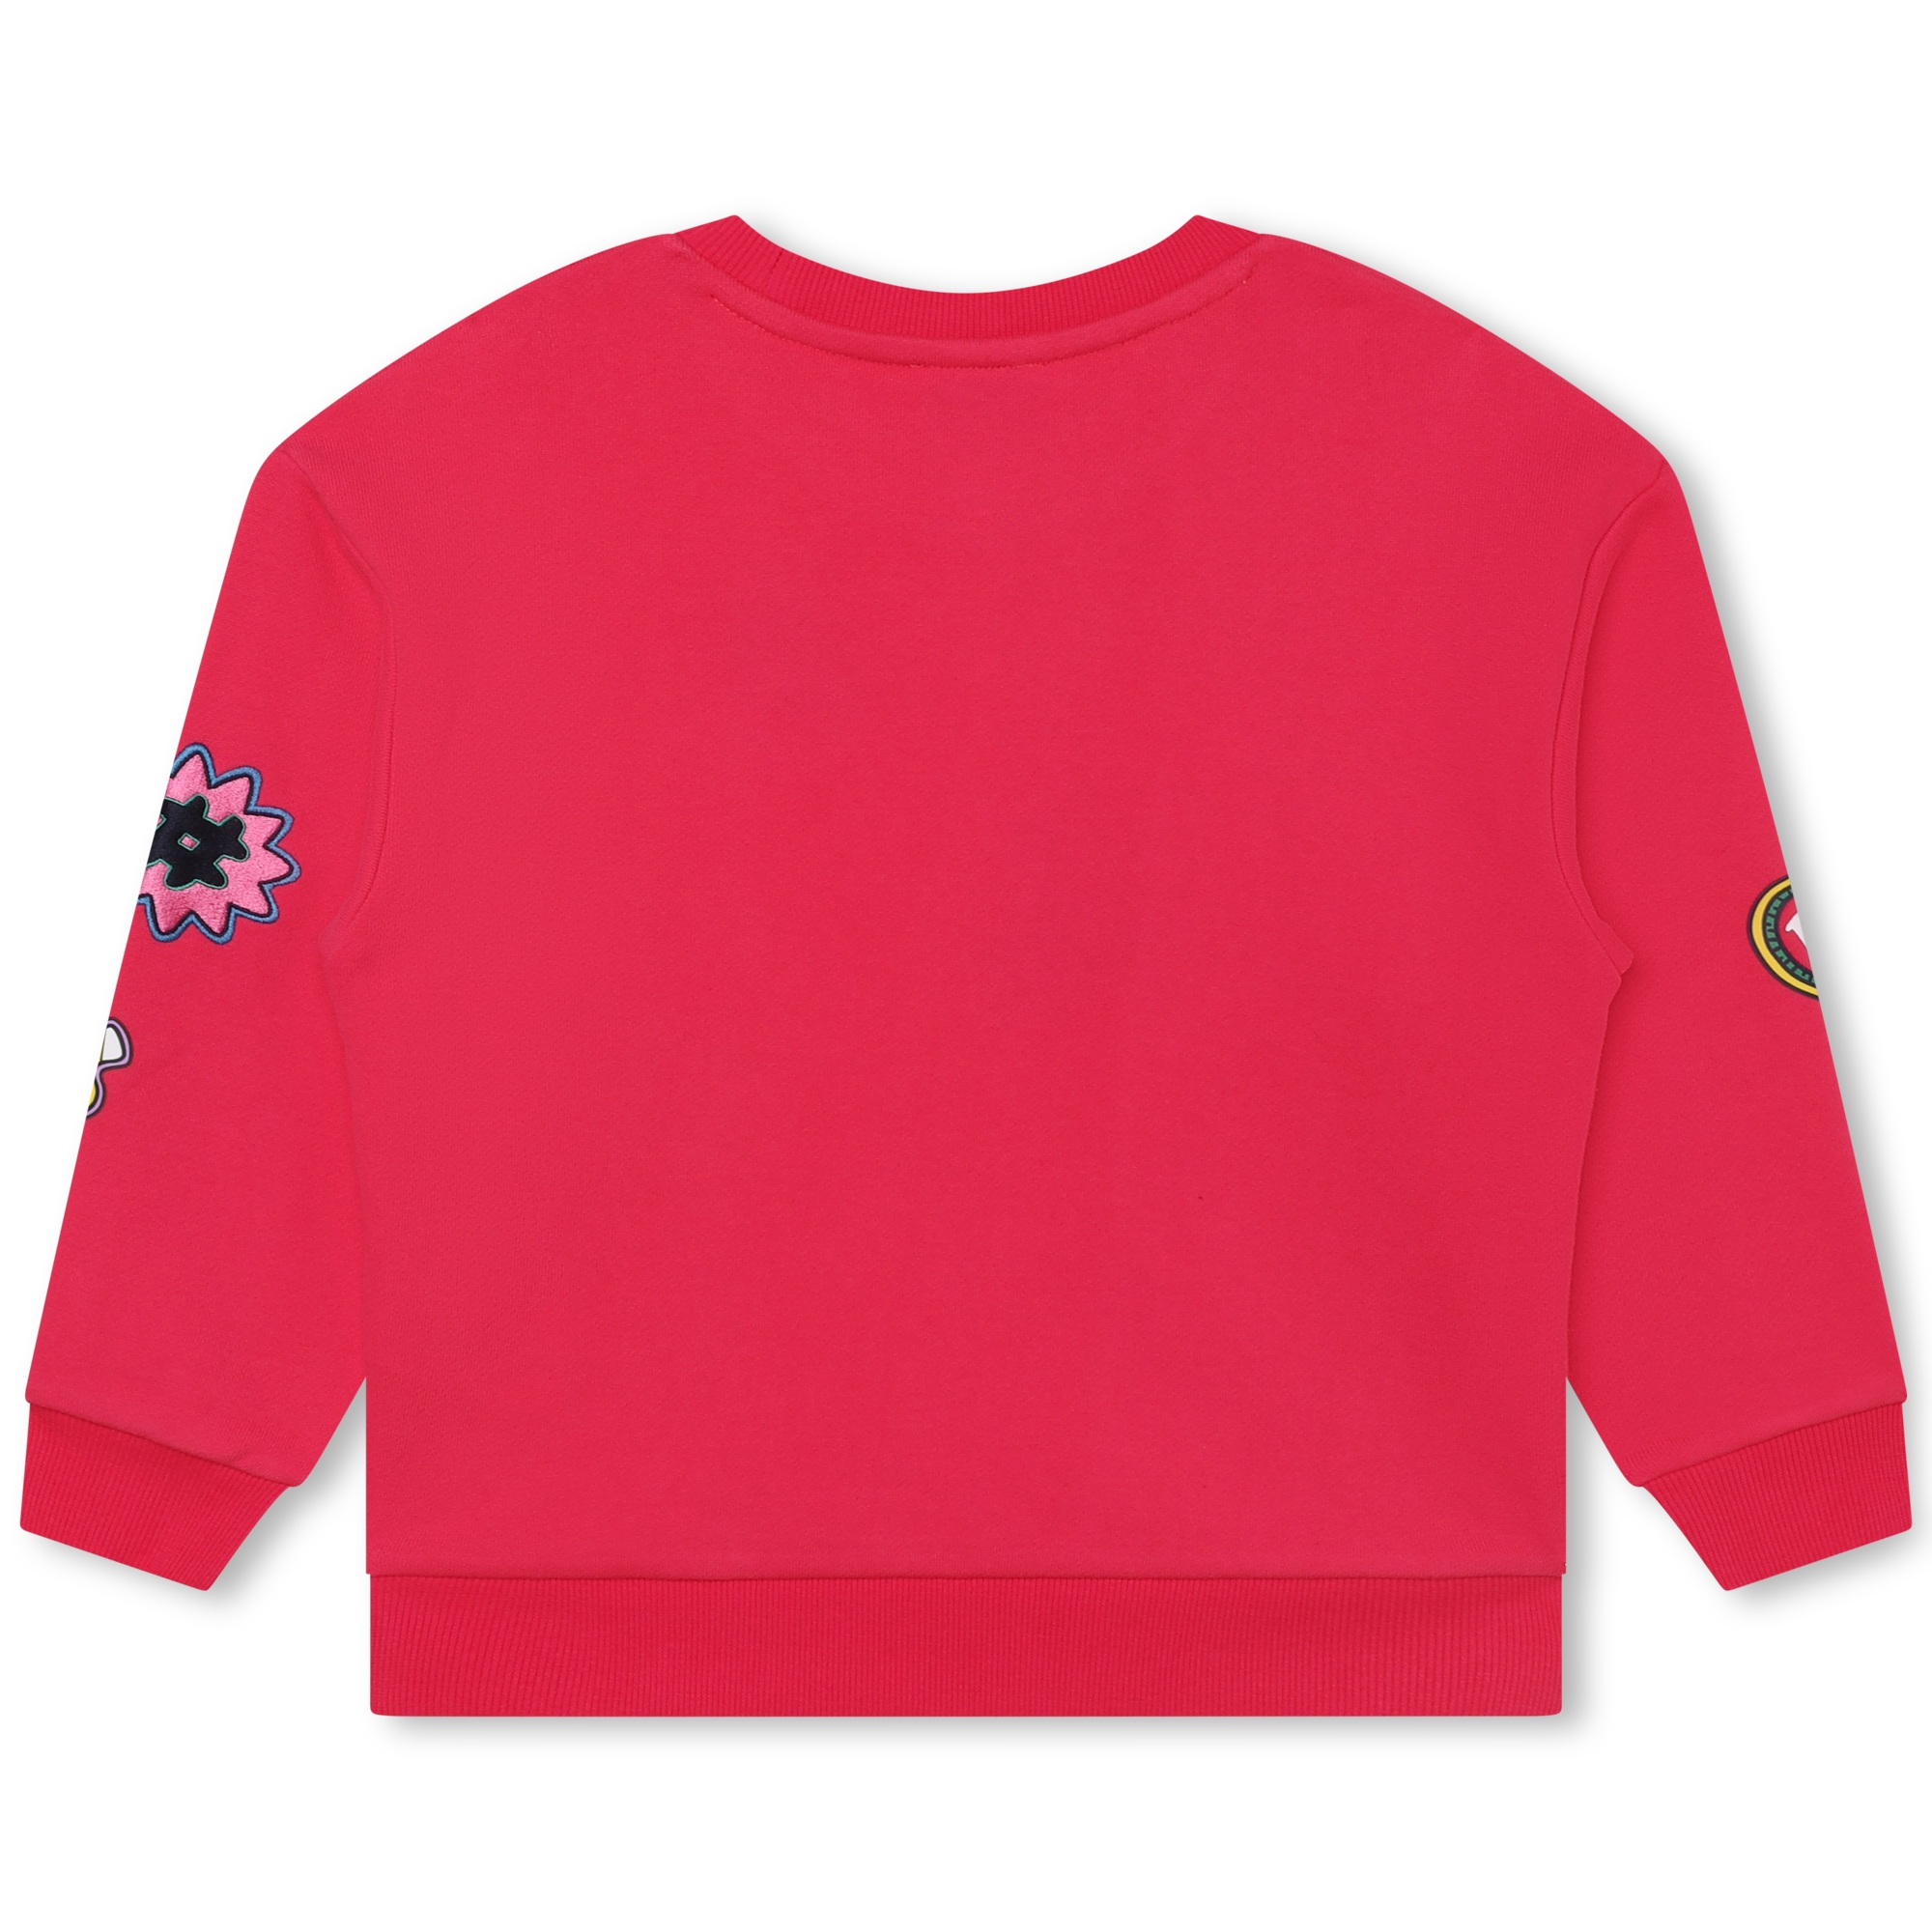 Fleece sweatshirt MARC JACOBS for GIRL